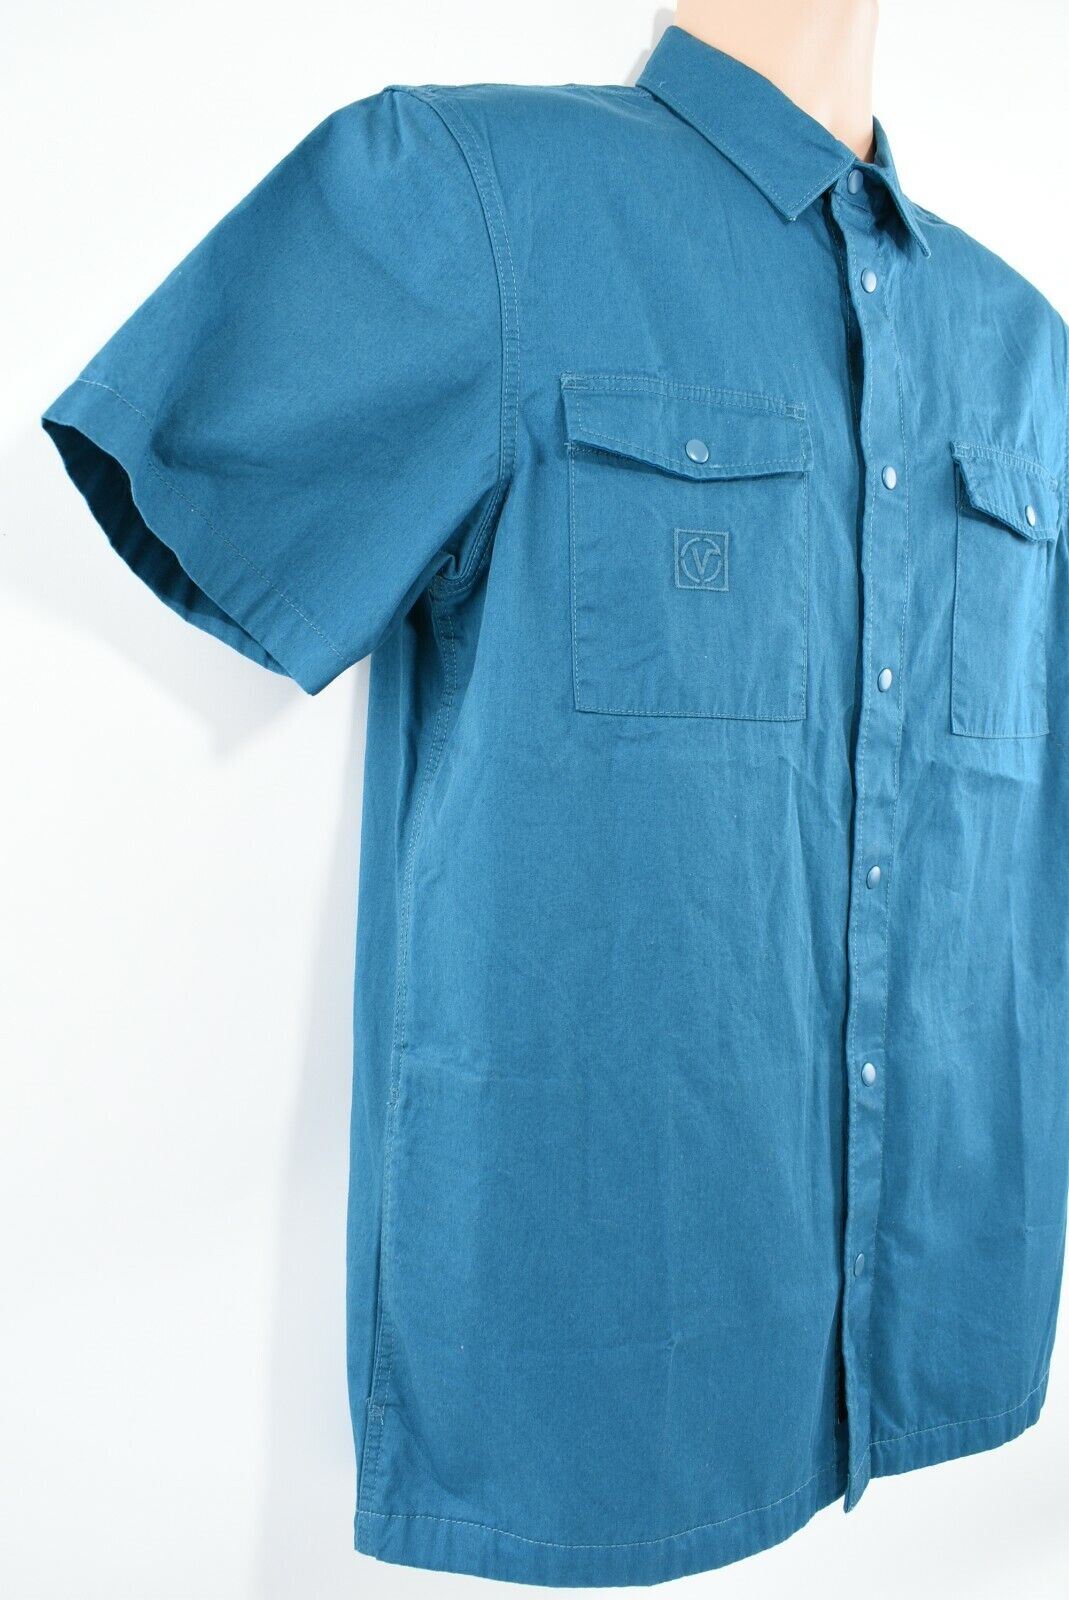 VANS Men's PORTAL Short Sleeve Shirt, Side Pockets, Teal, size S